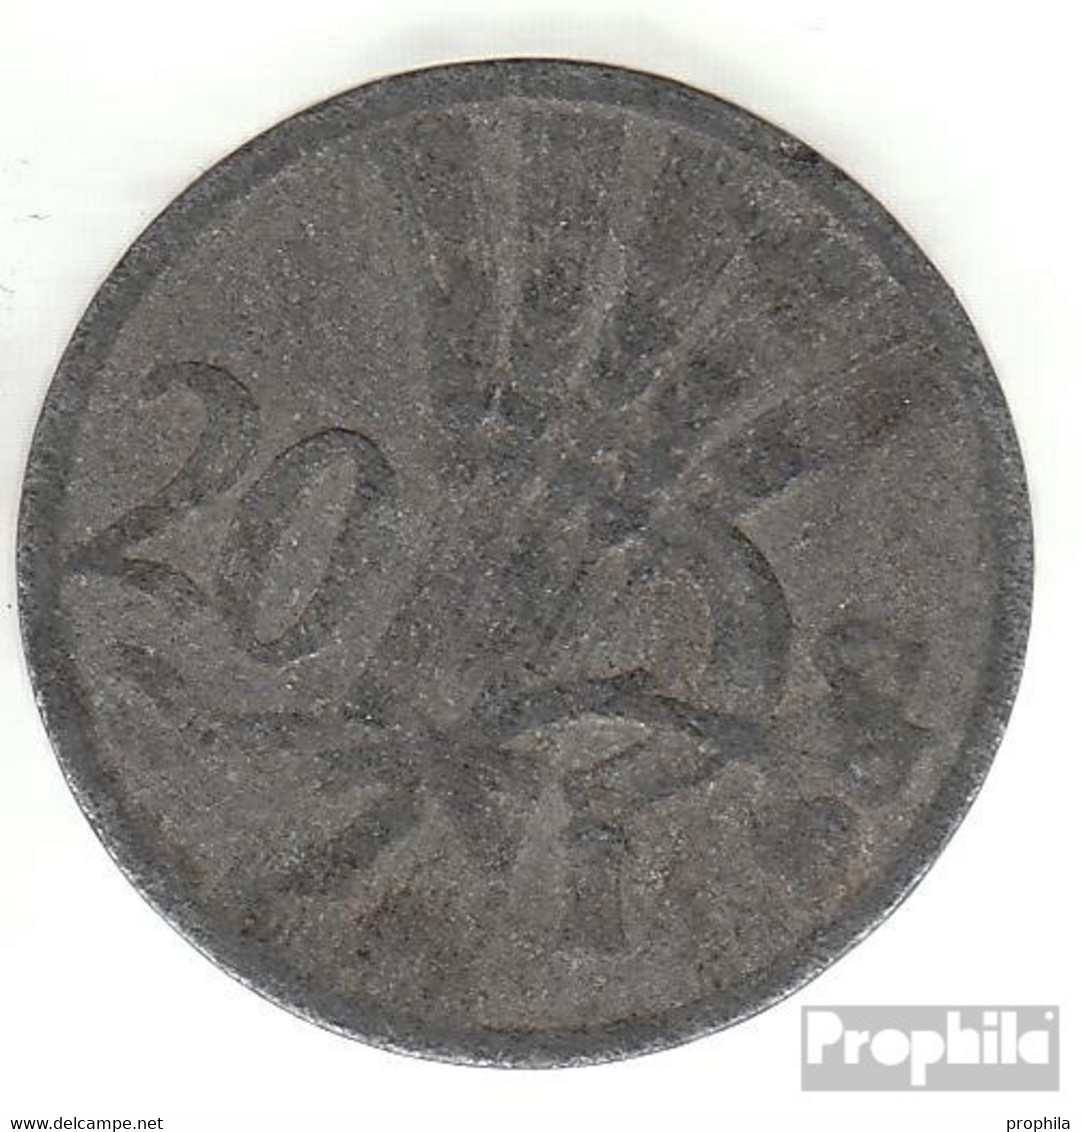 Böhmen Und Mähren Jägernr: 621 1941 Sehr Schön Zink Sehr Schön 1941 20 Heller Wappenlöwe - Military Coin Minting - WWII